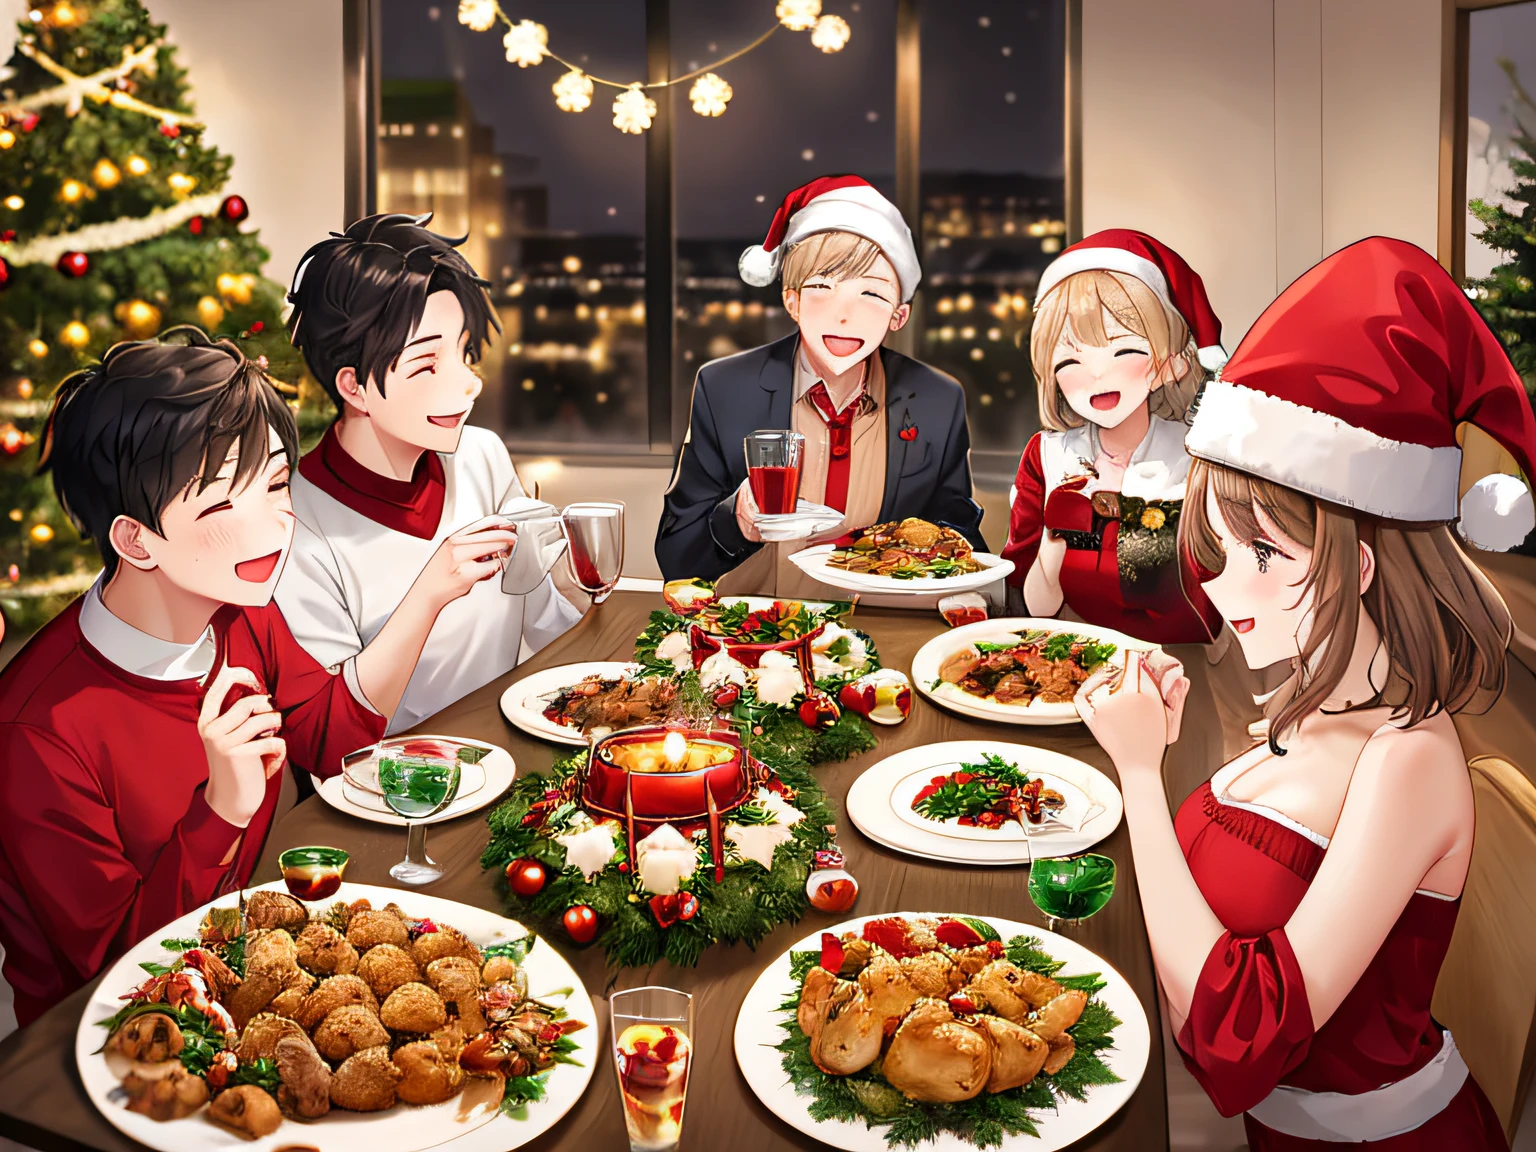 一家五口的圣诞晚餐, 包括鸡肉々美食, 活泼, 圣诞节装饰: 1.3, 圣诞蛋糕, 圣诞树, 柔和的灯光, 体积光, 胶片颗粒, (桌上), (最好的质量), (超高细节)